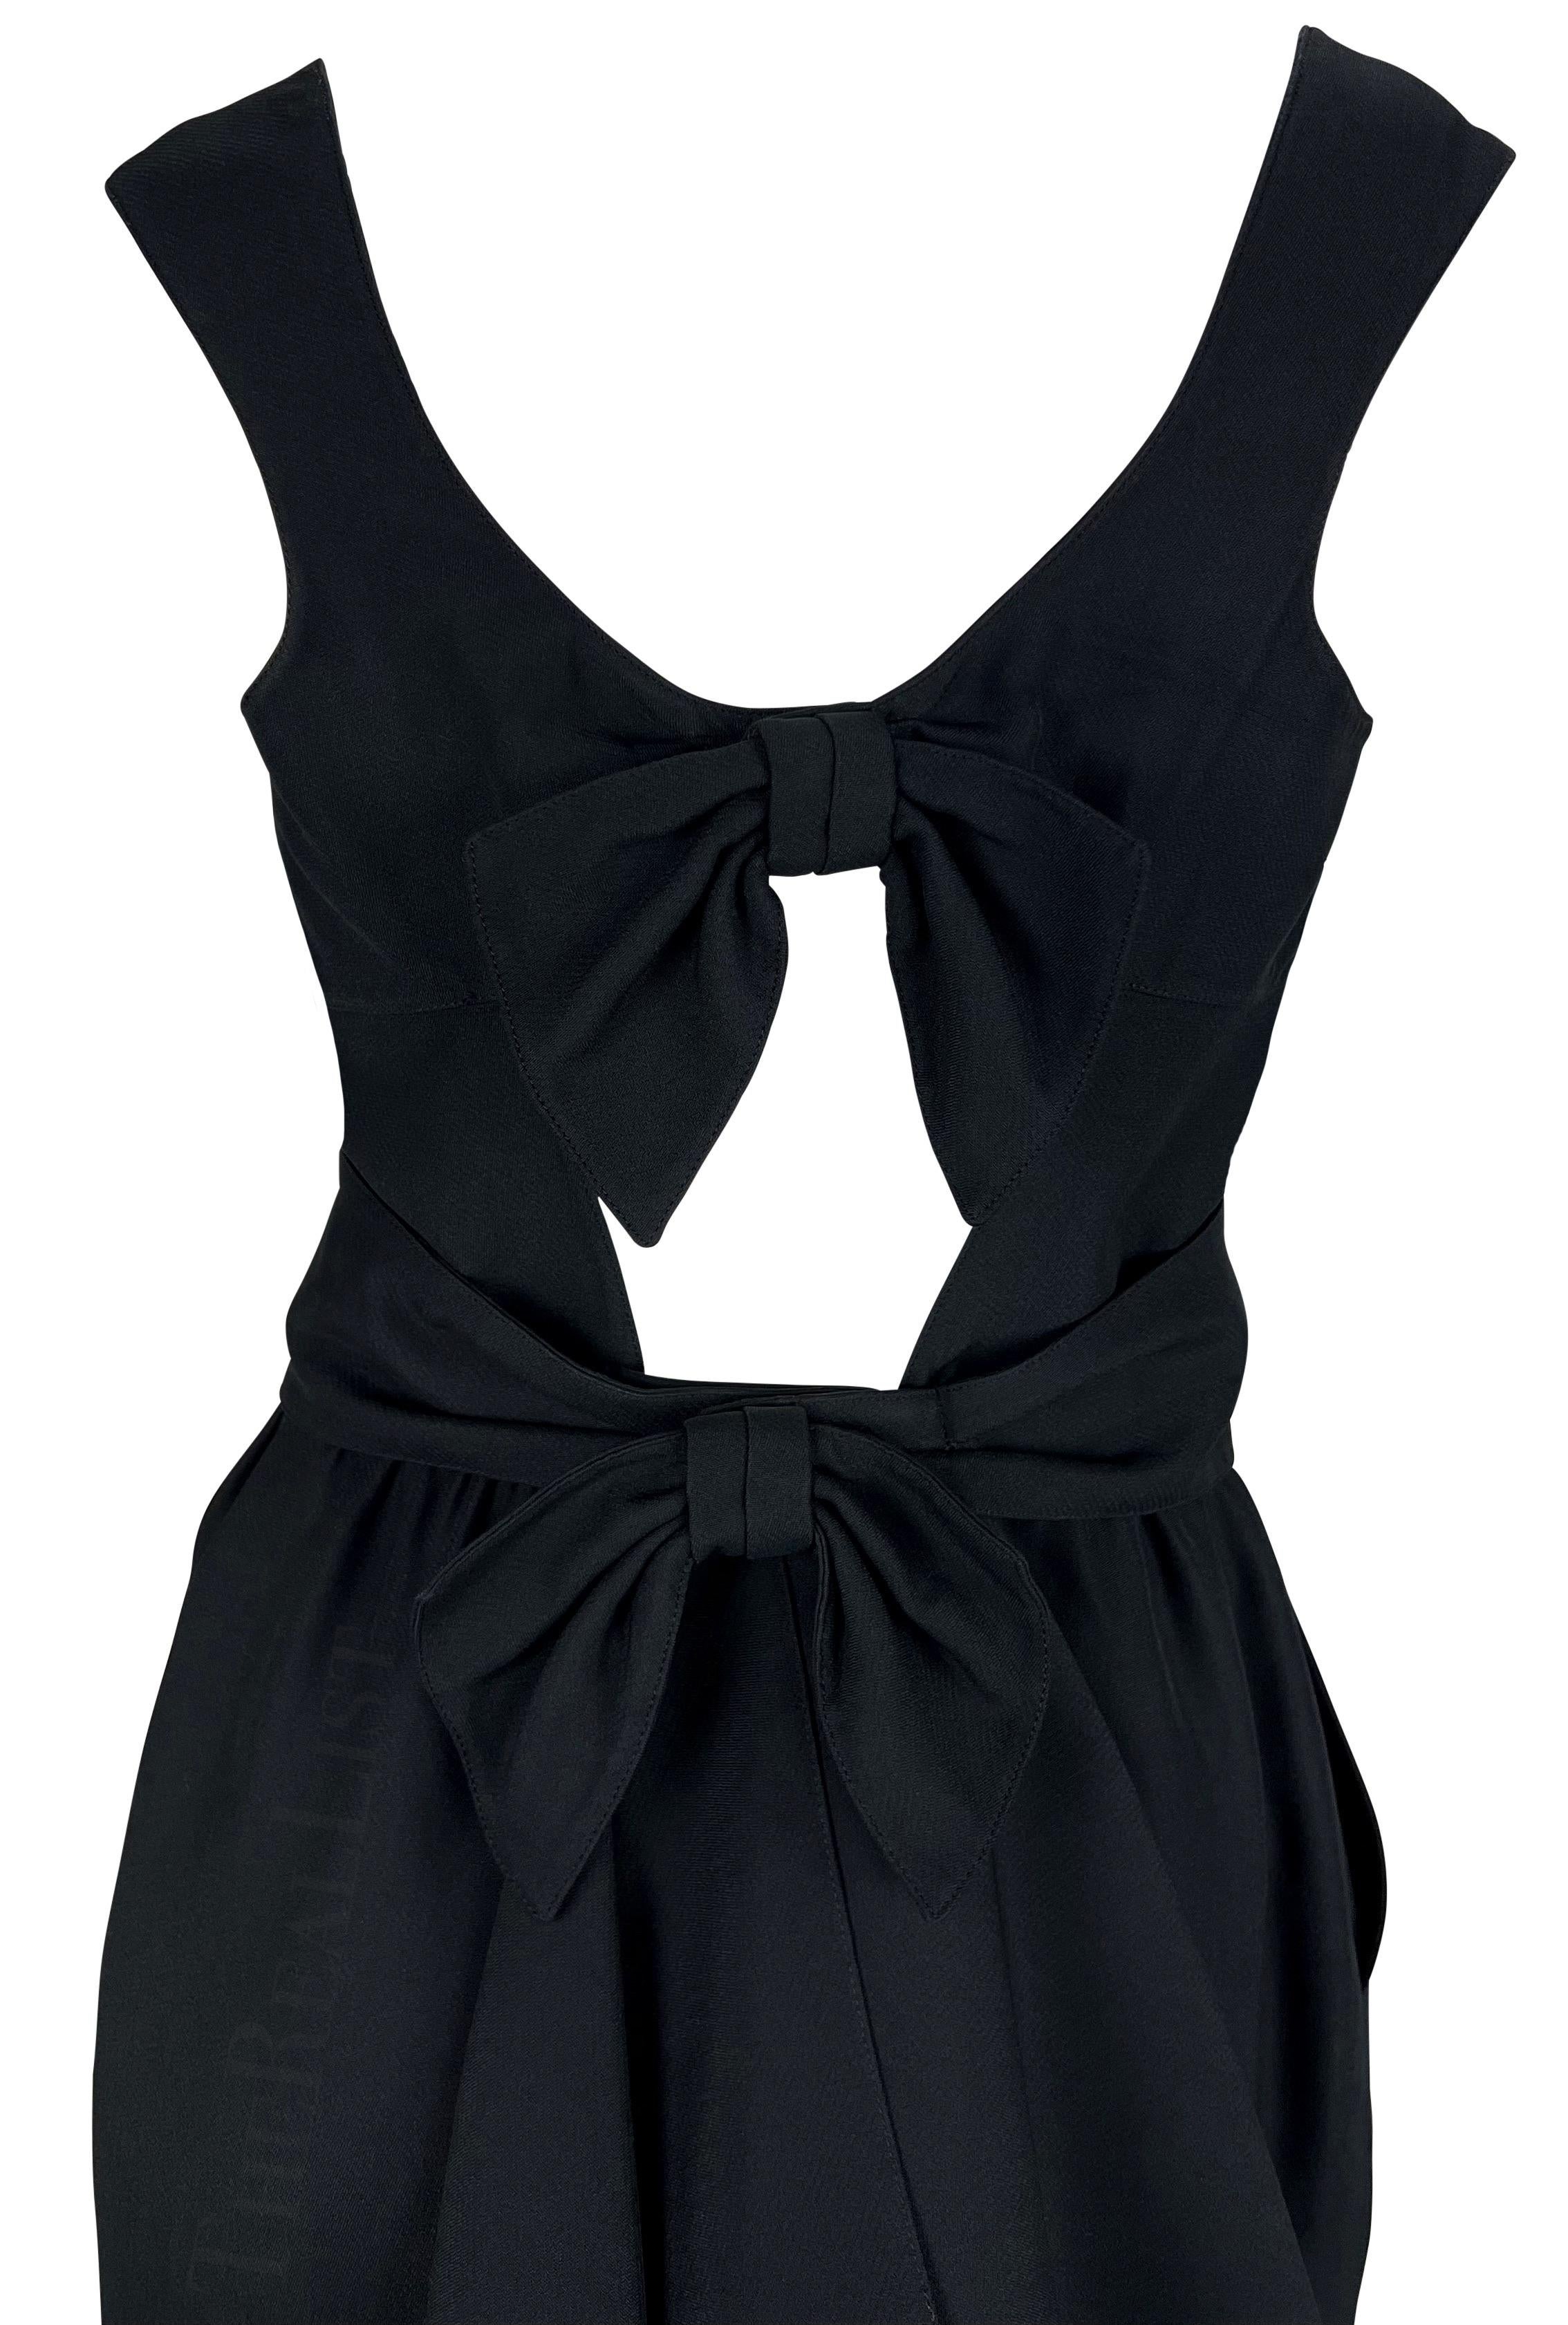 Nous vous présentons une fabuleuse mini robe noire Thierry Mugler, créée par Manfred Mugler. Datant du début des années 1990, cette petite robe noire présente un décolleté angulaire et une ceinture à la taille. La robe est complétée par un dos